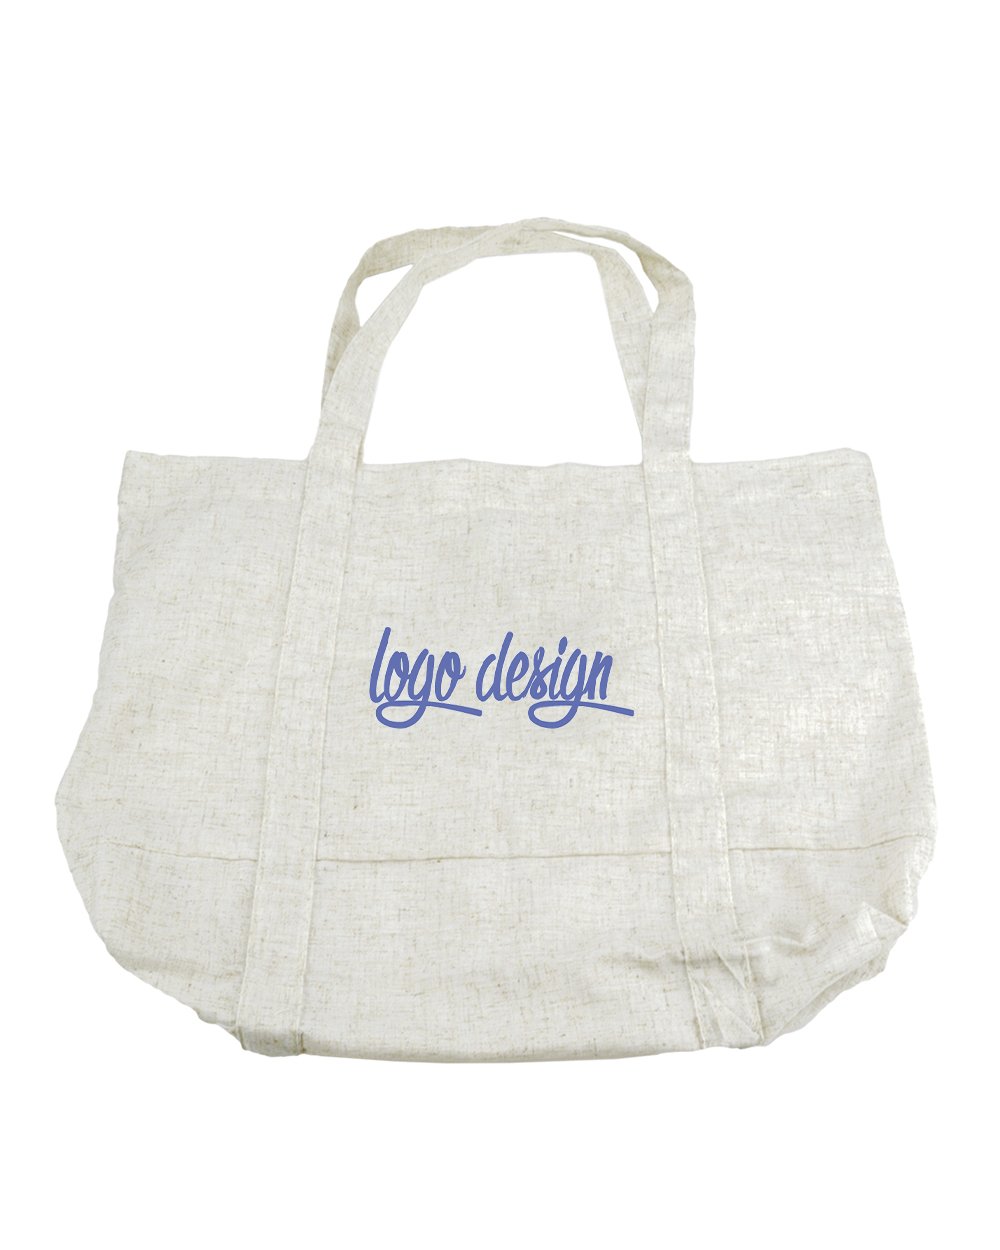 Custom 100% Natural Hemp Tote Bags - 1